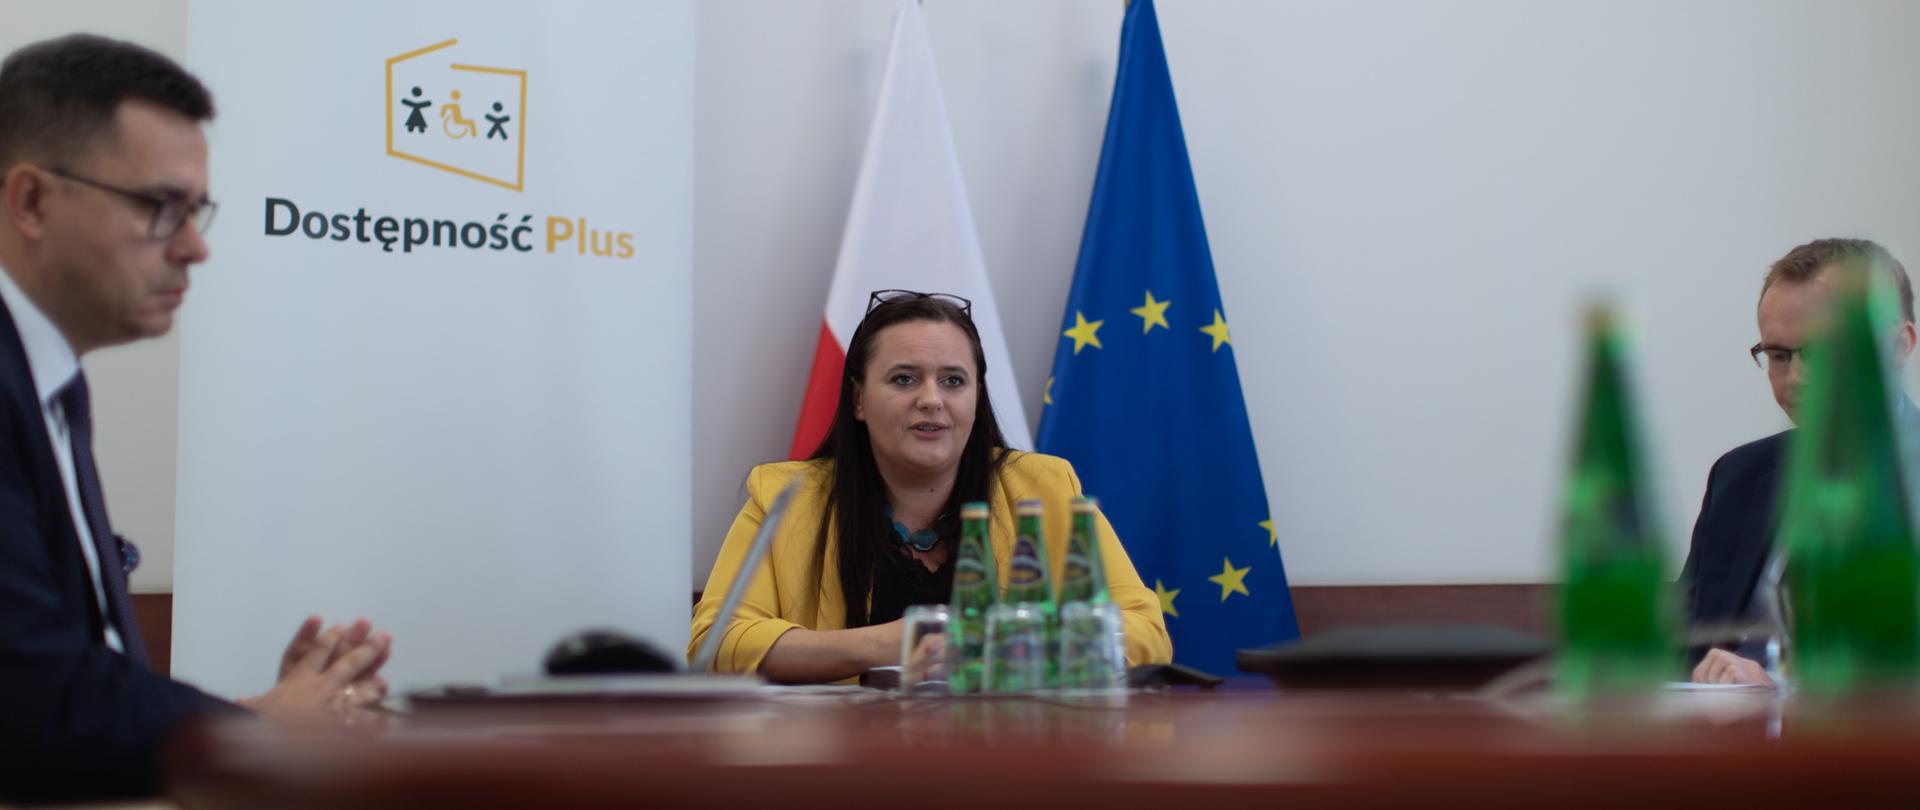 W pomieszczeniu przy stole siedzą trzy osoby. Wśród nich obok białego Roll-upu z napisem Dostępność Plus siedzi minister M. Jarosińska-Jedynak.